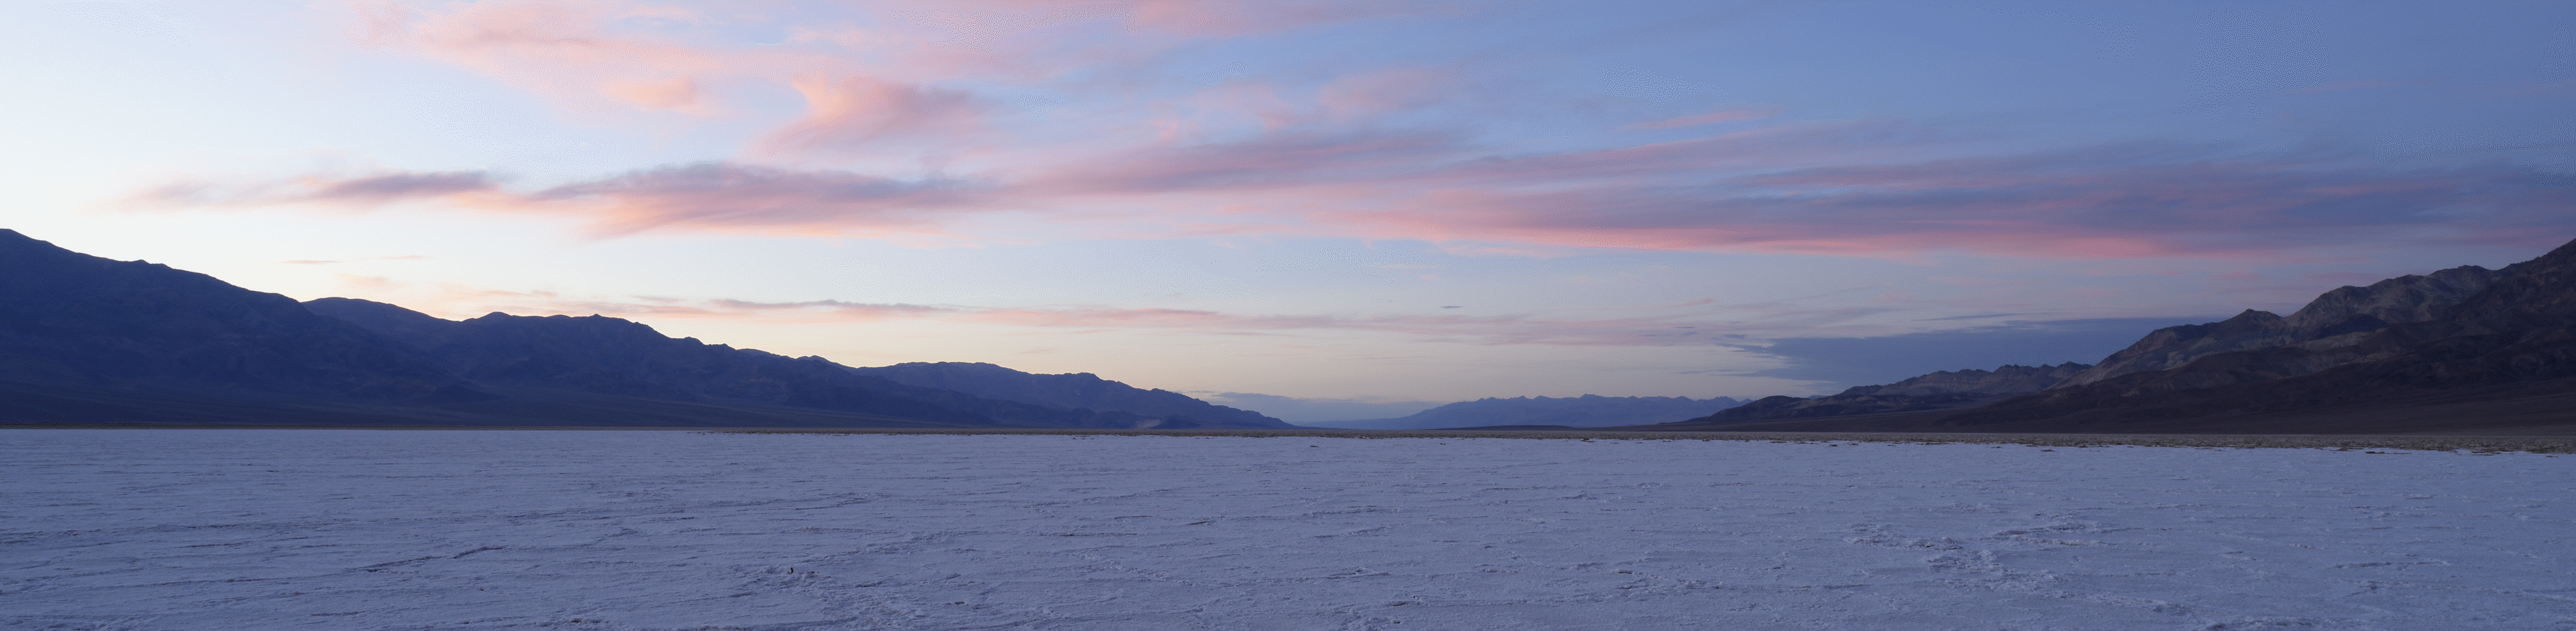 Širokokotni posnetek puščavske pokrajine s sončnim zahodom za oddaljenimi gorami